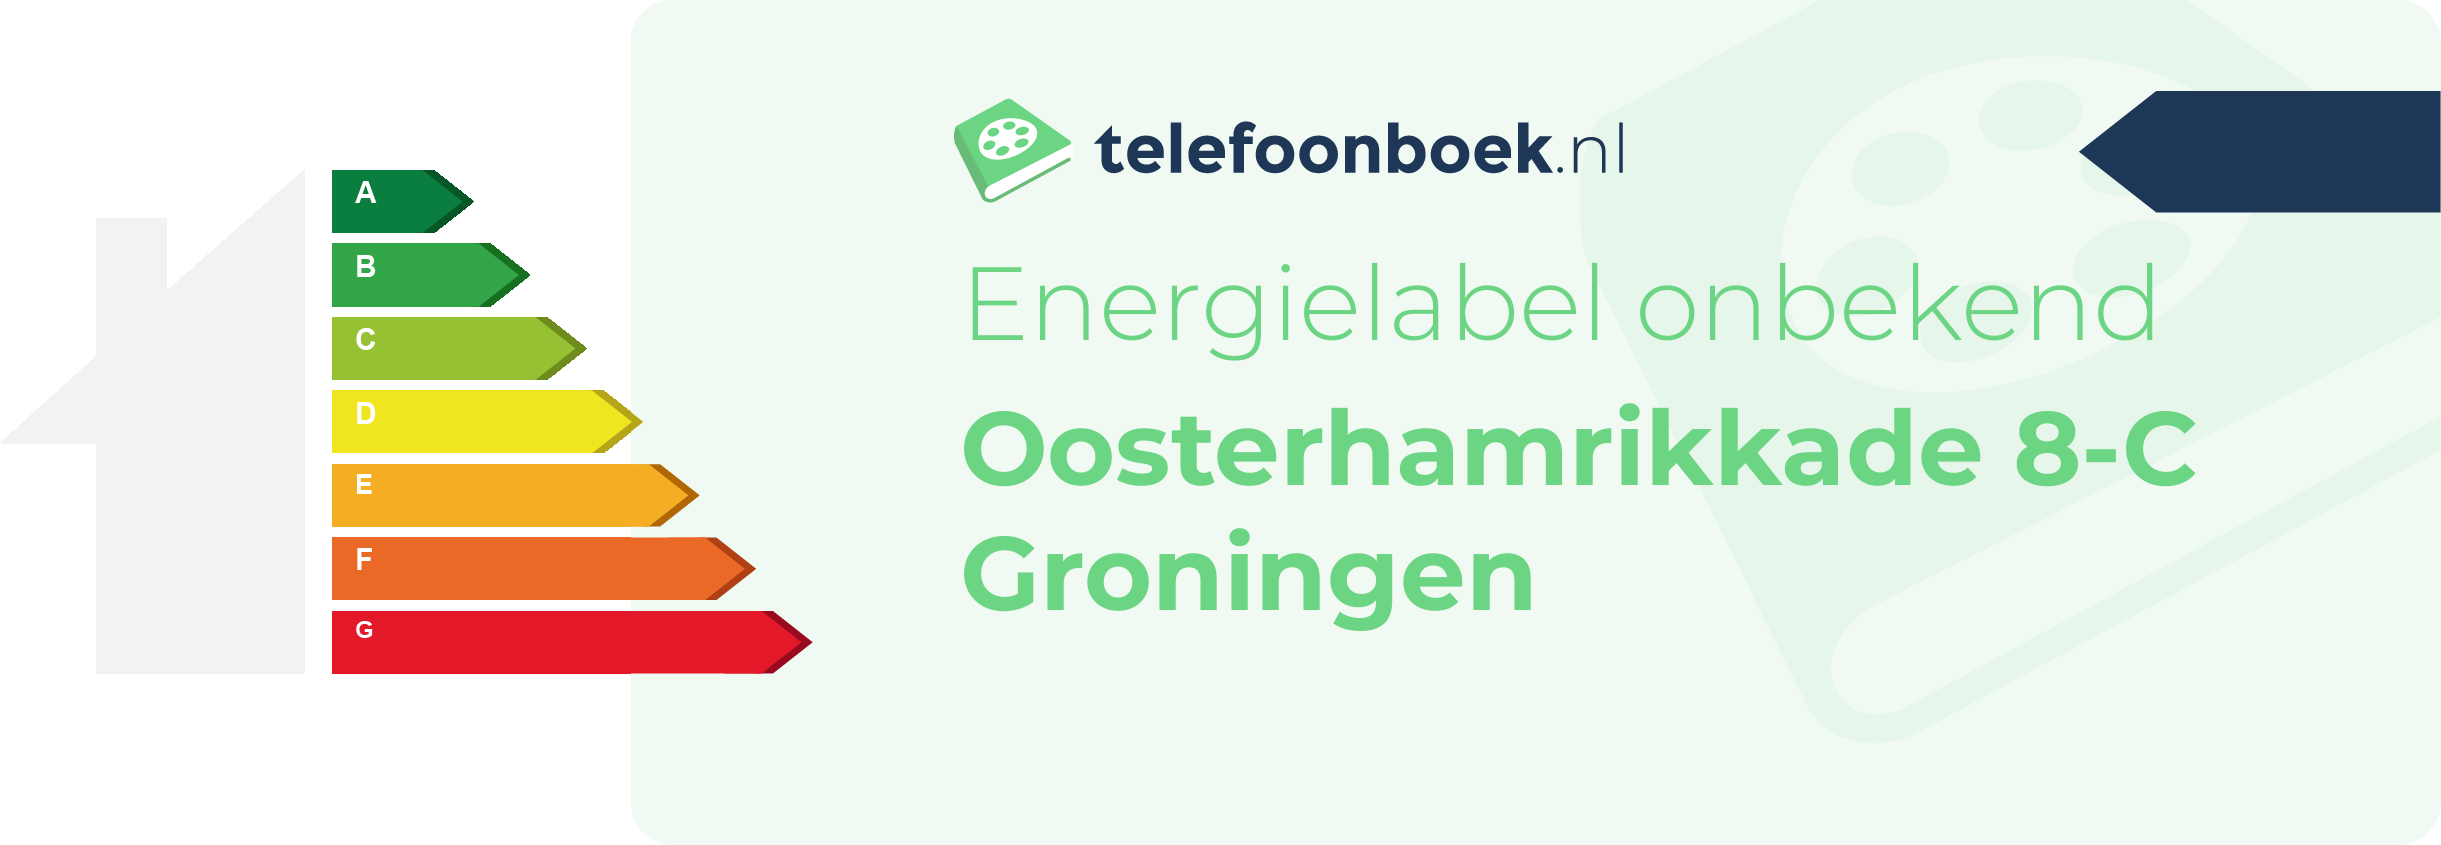 Energielabel Oosterhamrikkade 8-C Groningen